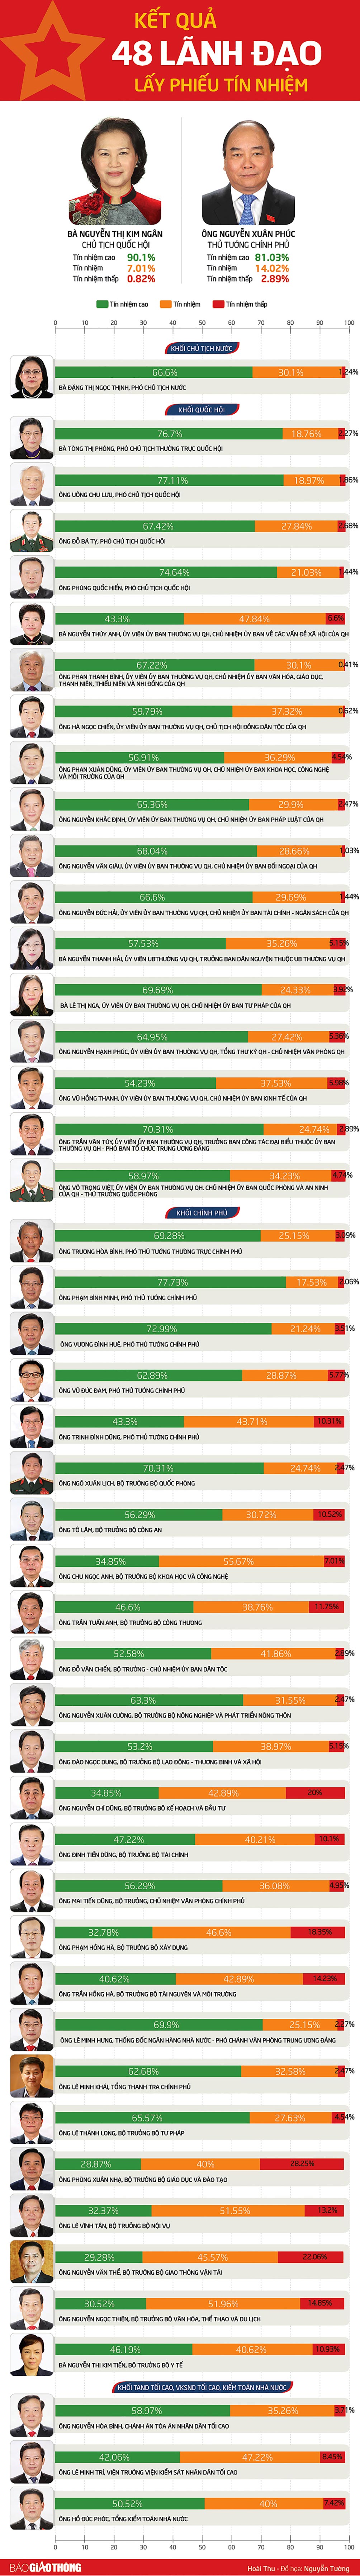 Infographic: Kết quả phiếu tín nhiệm của 48 lãnh đạo cấp cao - 1